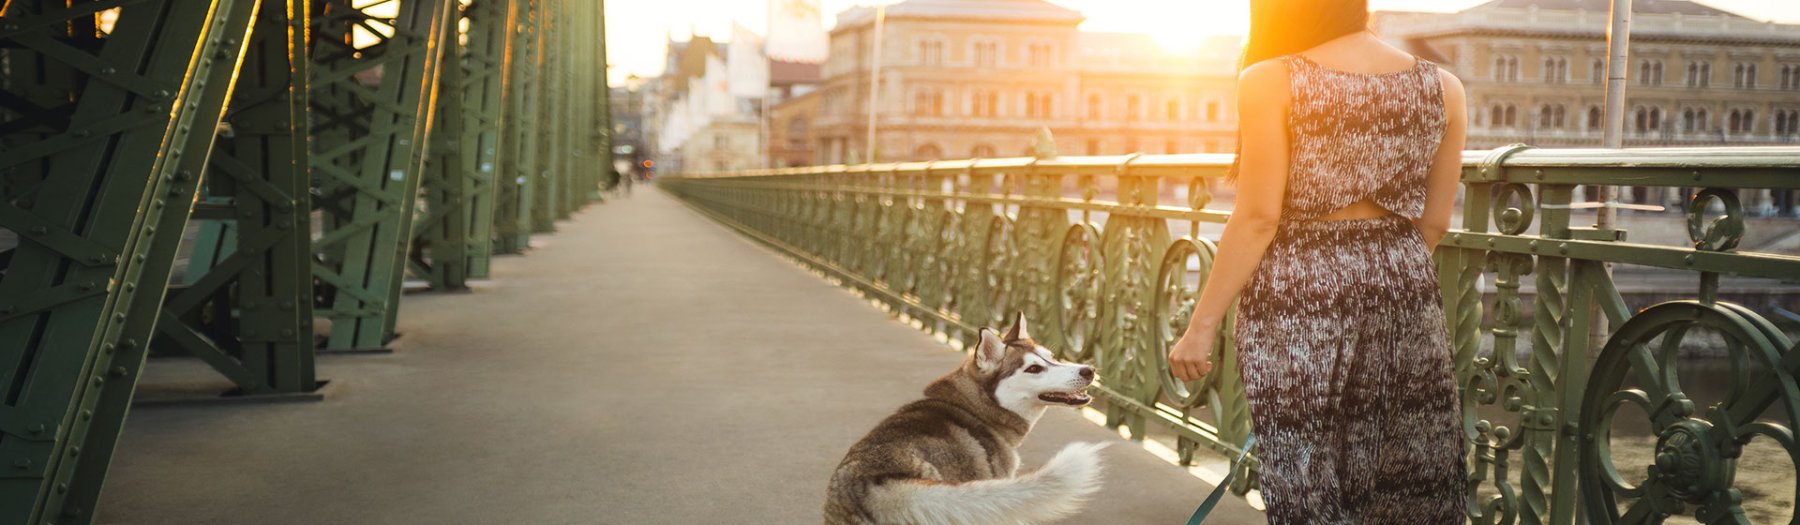 Ferienhausurlaub mit Hund in Ungarn 